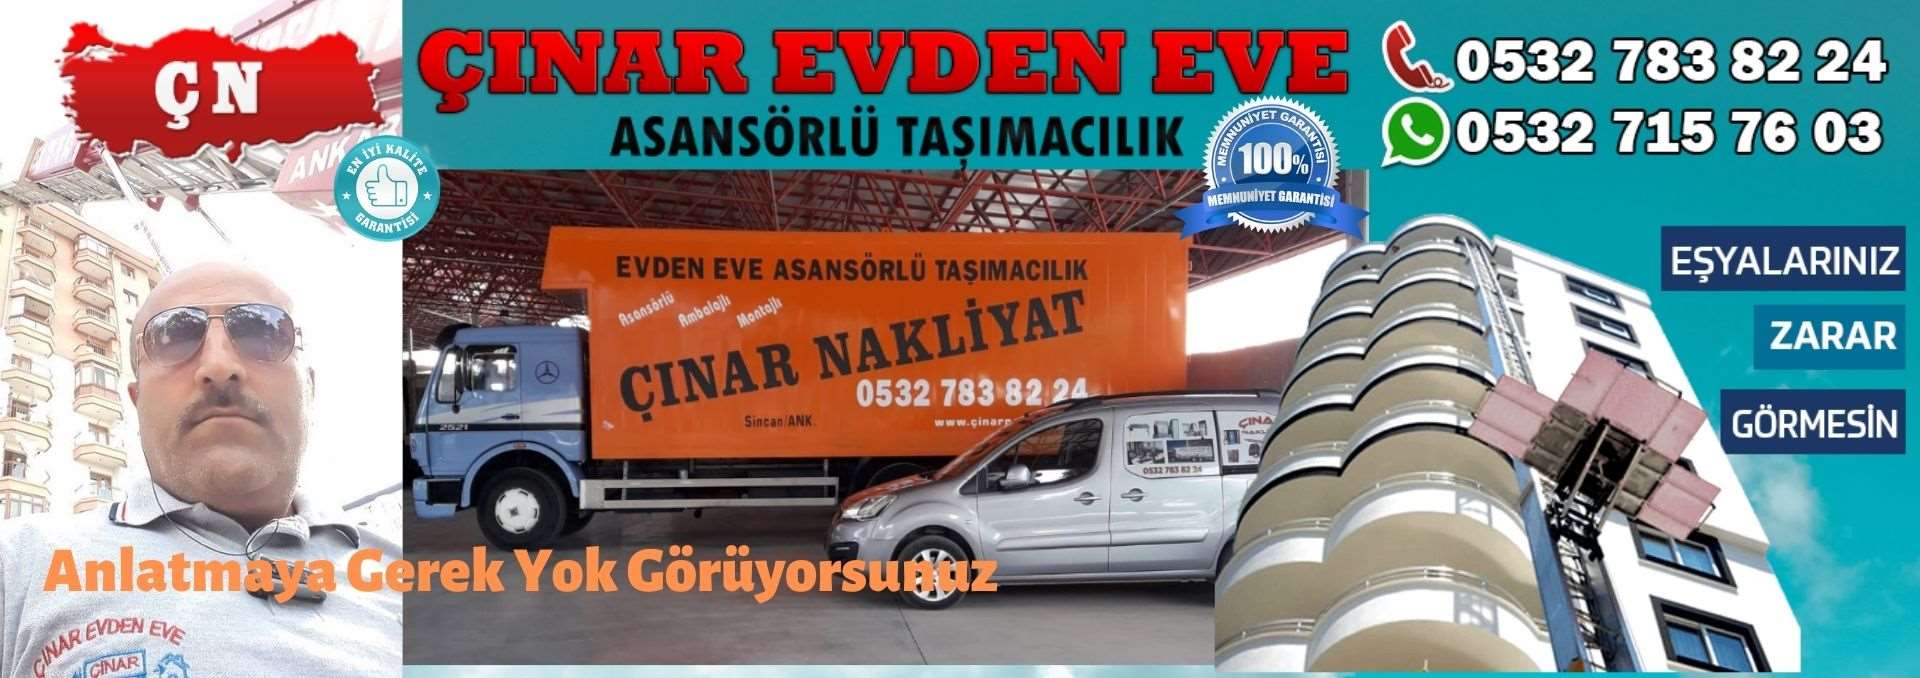 Ankara Ayaş Evden Eve Asansörlü Ev Eşyası Taşıma 0532 715 76 03